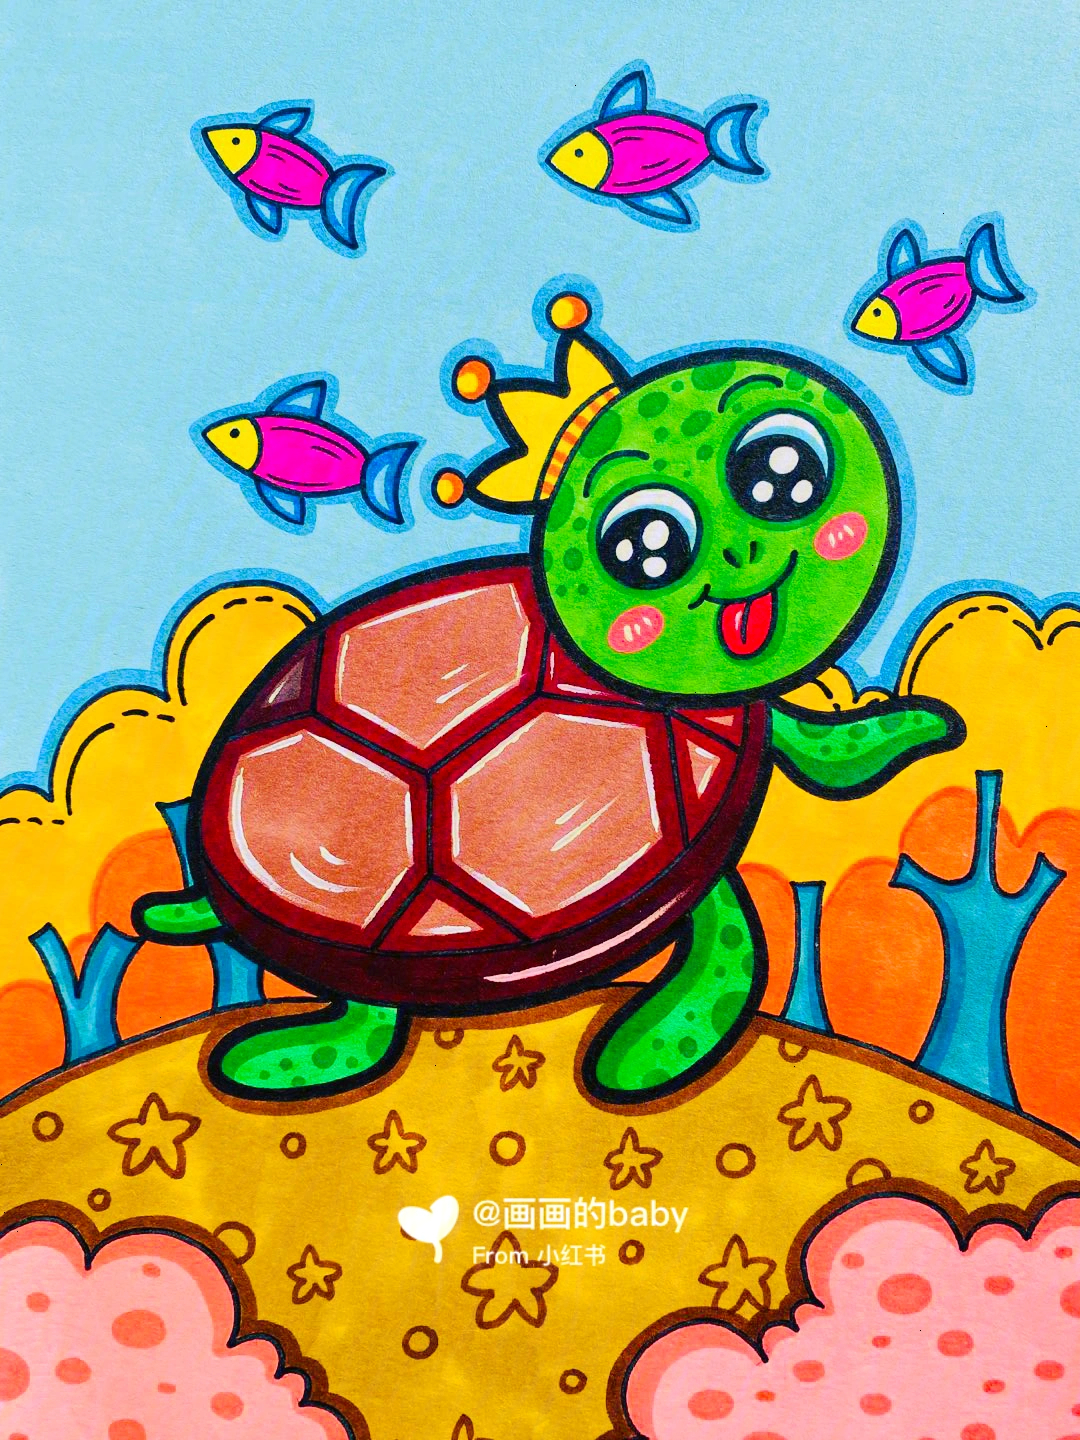 乌龟马克笔儿童画